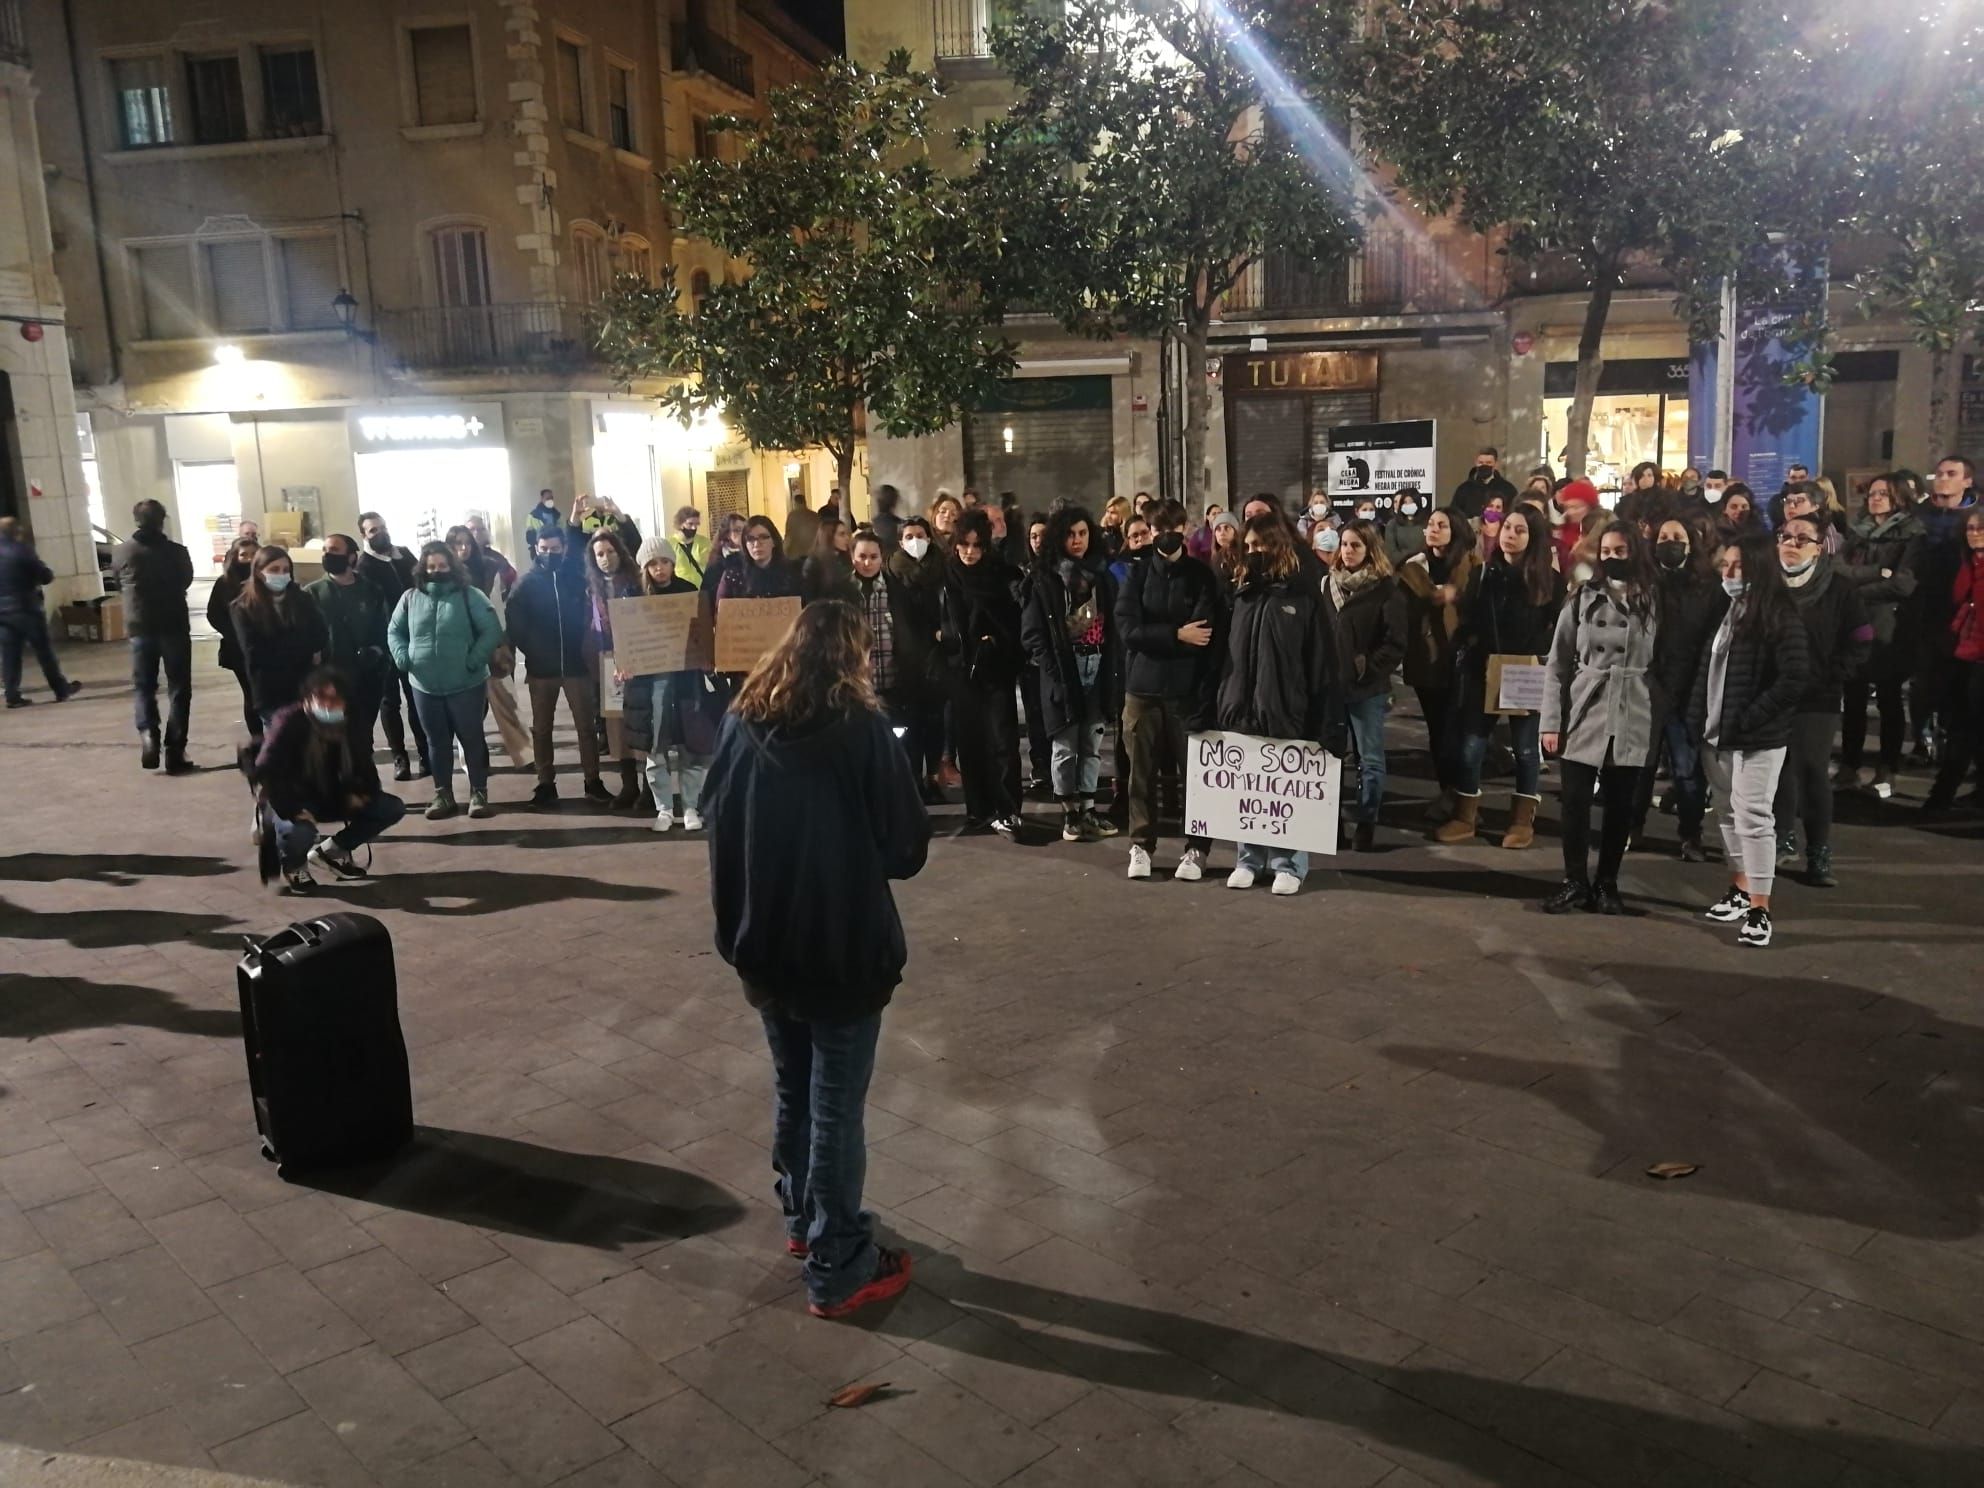 La plaça de l'Ajuntament es va omplir de clams a favor dels drets de les dones